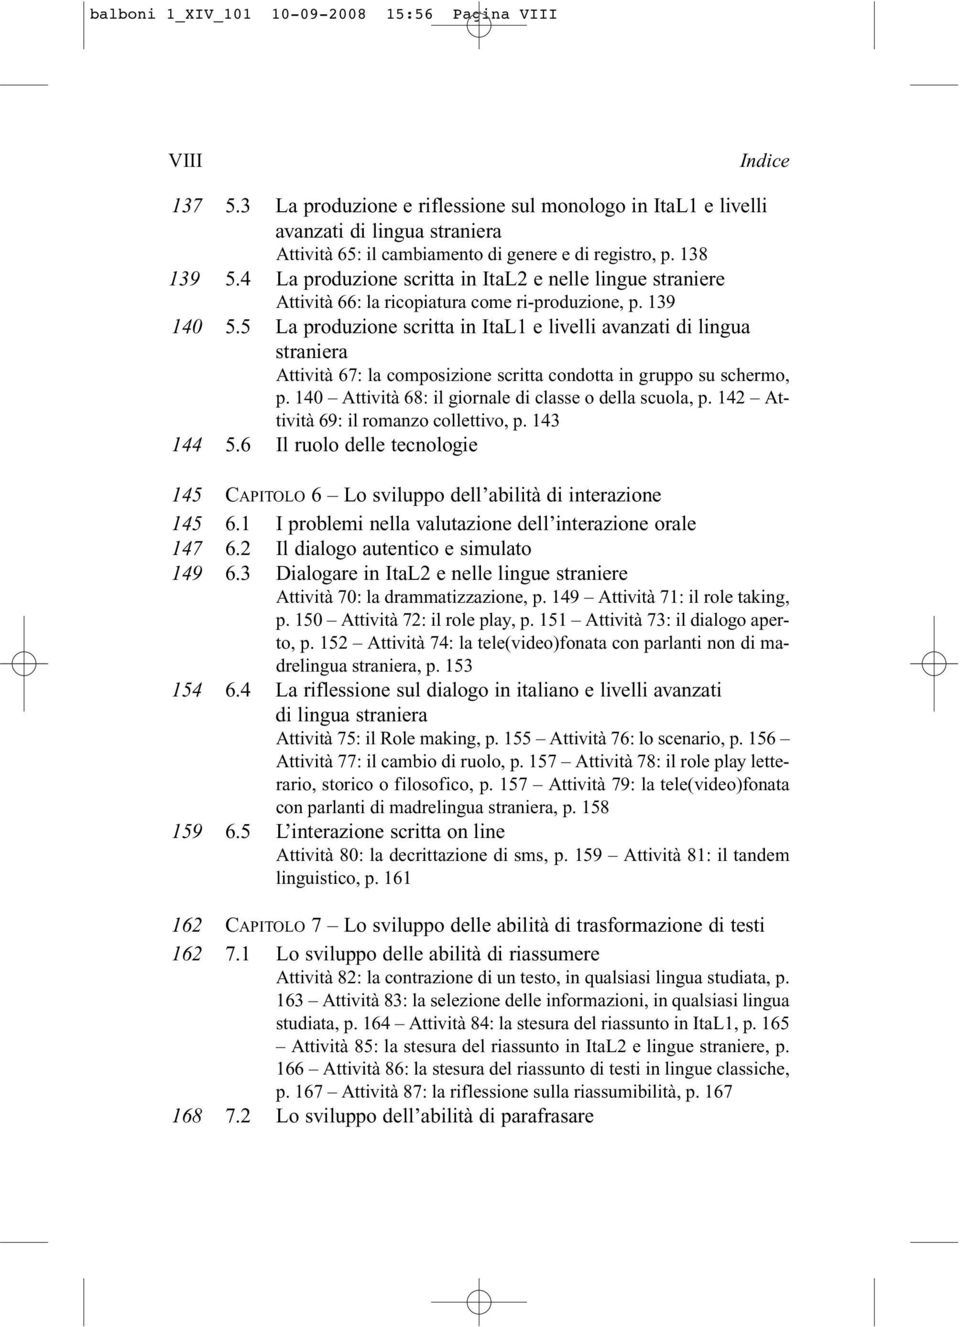 4 La produzione scritta in ItaL2 e nelle lingue straniere Attività 66: la ricopiatura come ri-produzione, p. 139 140 5.